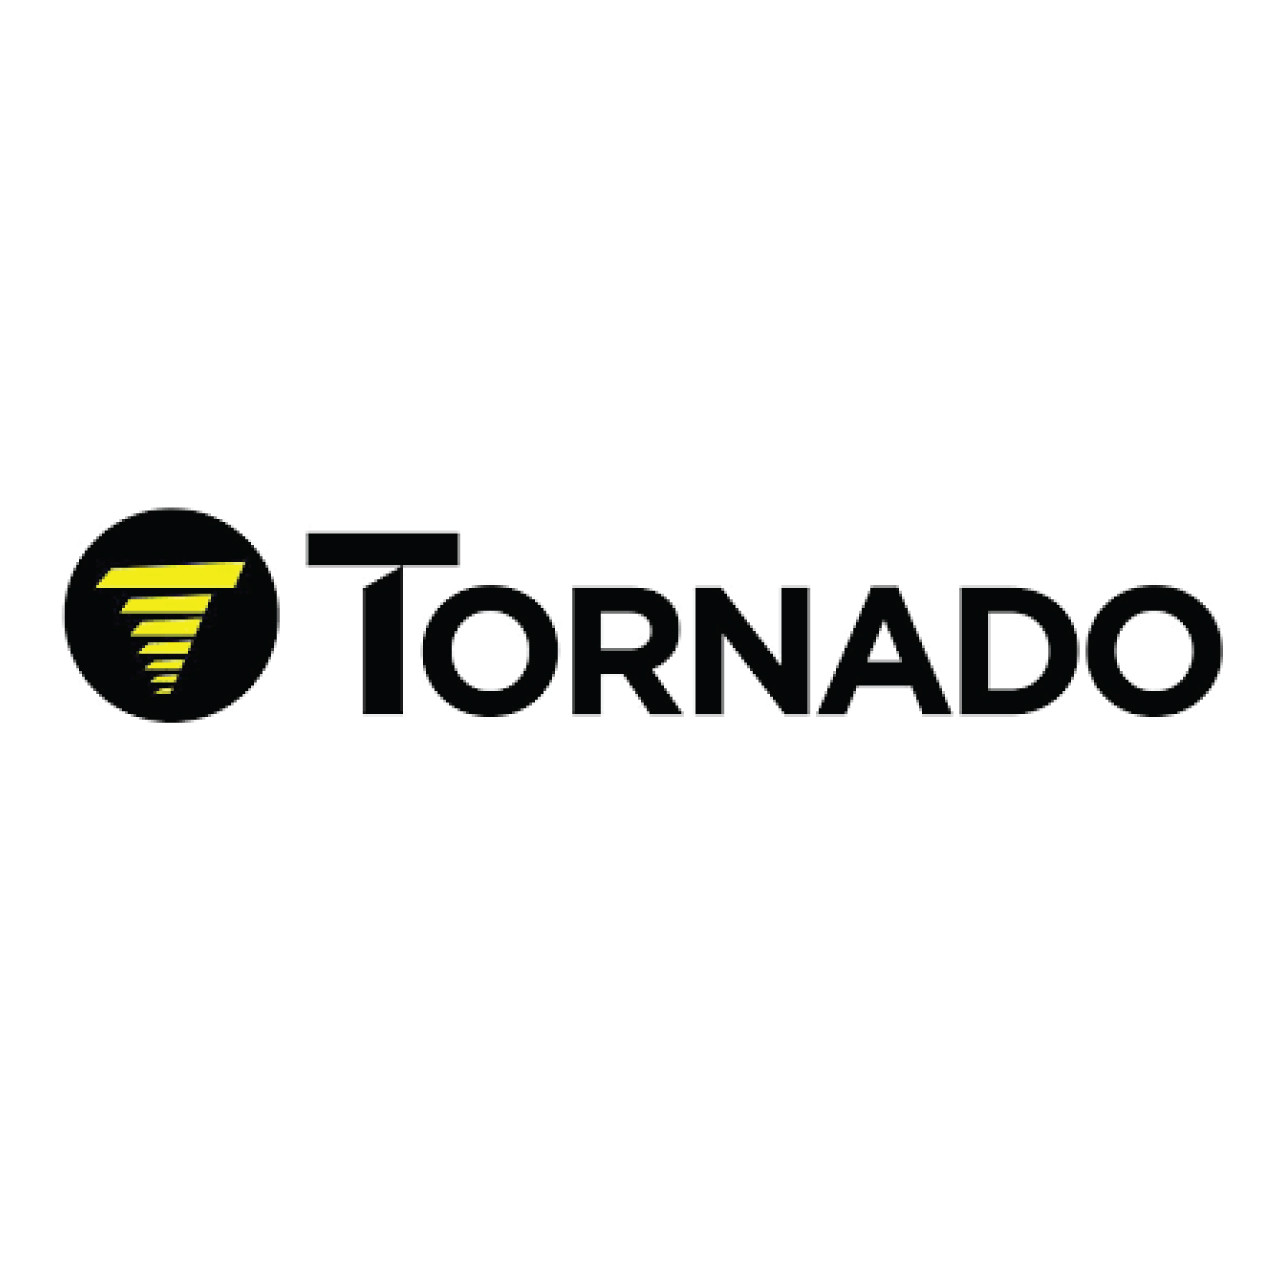 02-4535-0000, Tornado 02-4535-0000, Tornado ELBOW CONNECTOR 1/8" BSP THREAD 6mm HOSE I/D RS 419-7394, Tornado parts